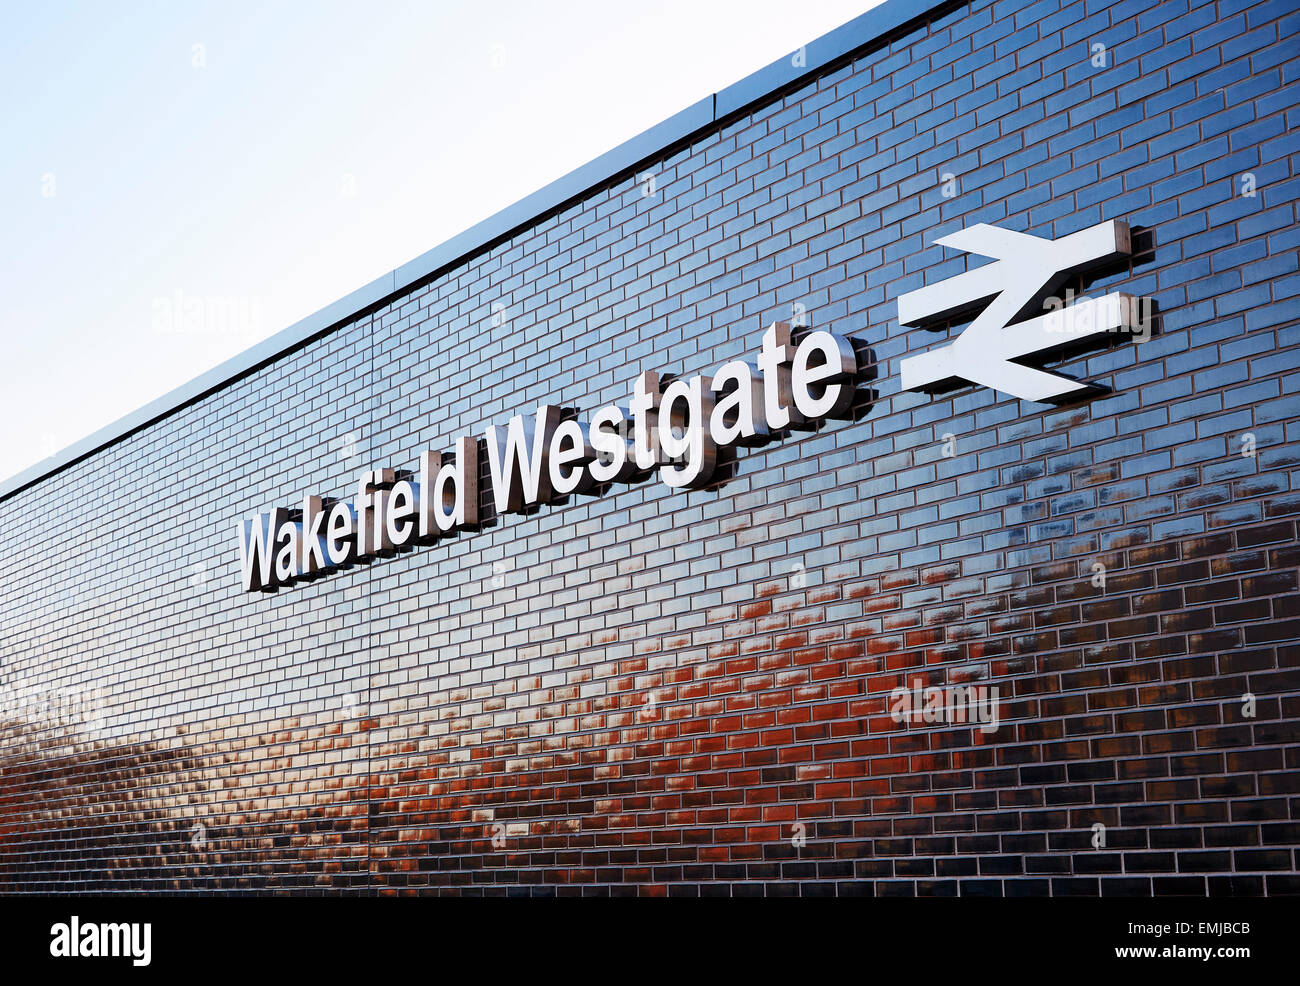 Grande segno sulla parete esterna di Wakefield Westgate stazione ferroviaria. Copia spazio per il testo Foto Stock